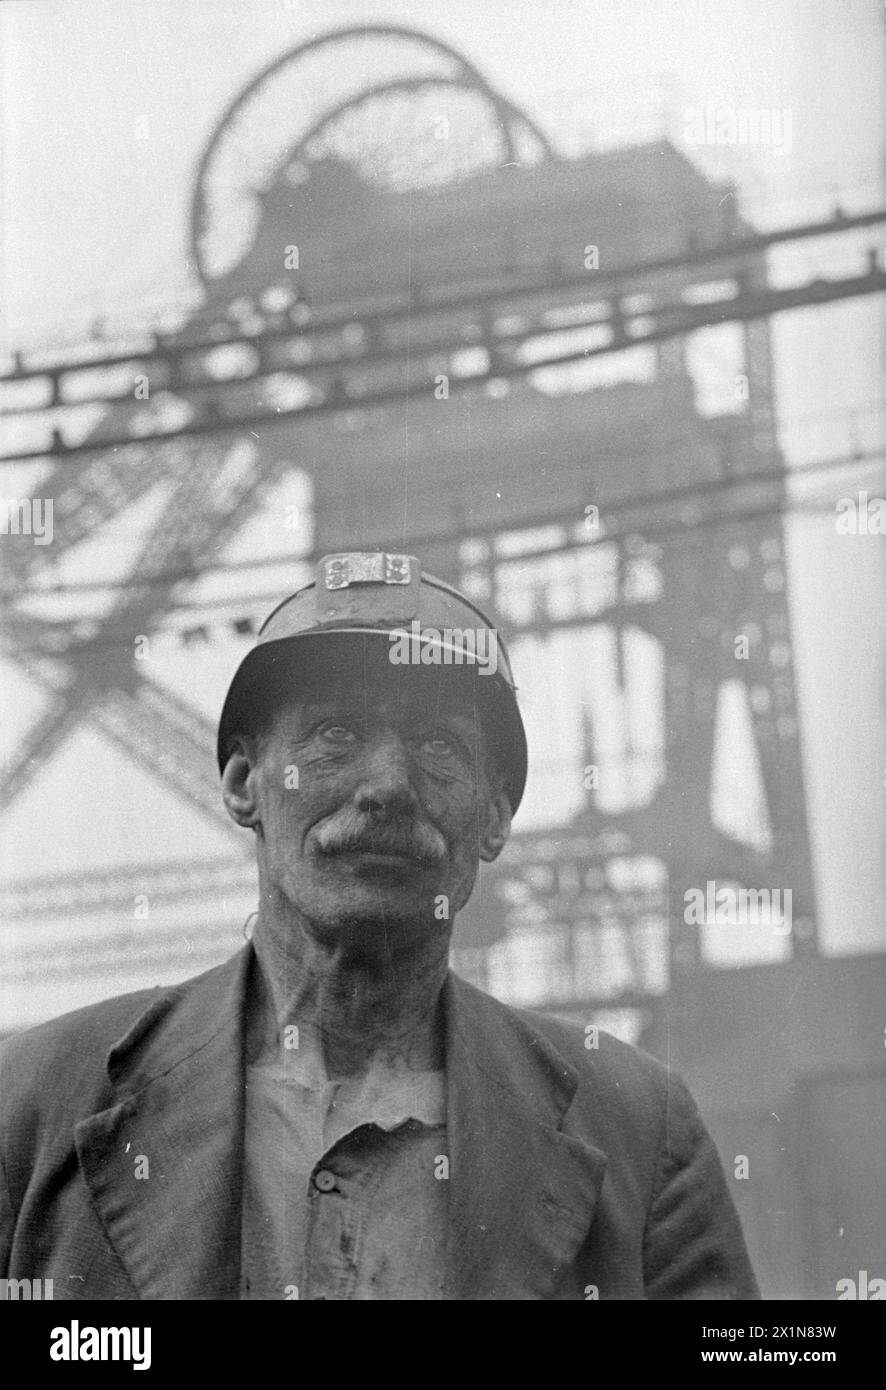 MAN OF THE MINE: LIFE AT THE COAL FACE, GROSSBRITANNIEN, 1942 - Ein auffälliges Kopf-und-Schultern-Porträt des Bergarbeiters Fred Woolhouse. Im Hintergrund sieht man die Grubenkopfmaschine, die über ihm thront. Stockfoto